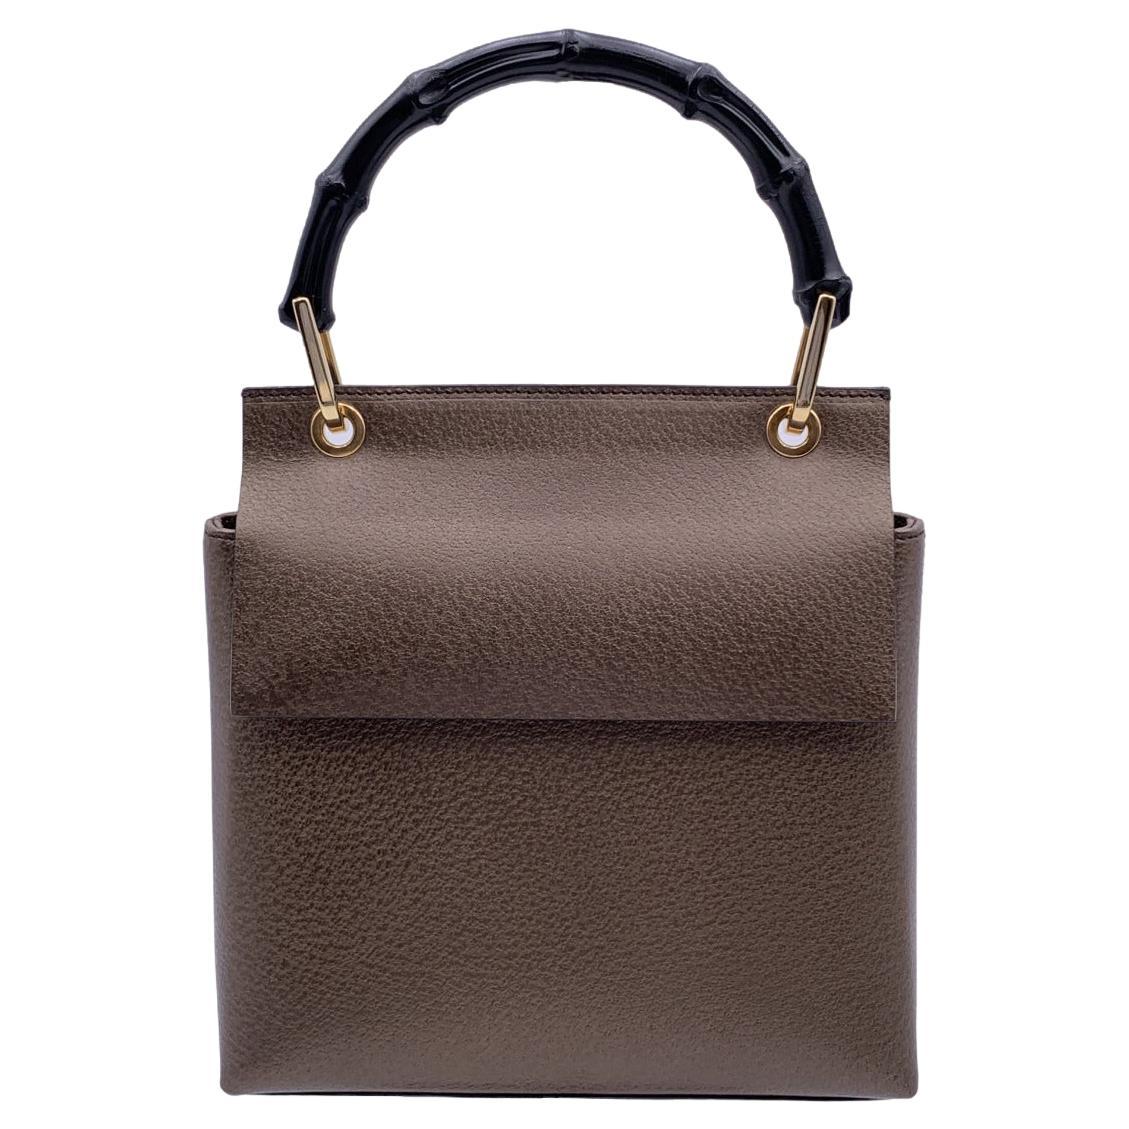 Gucci Vintage Brown Leather Bamboo Handle Small Box Handbag Bag